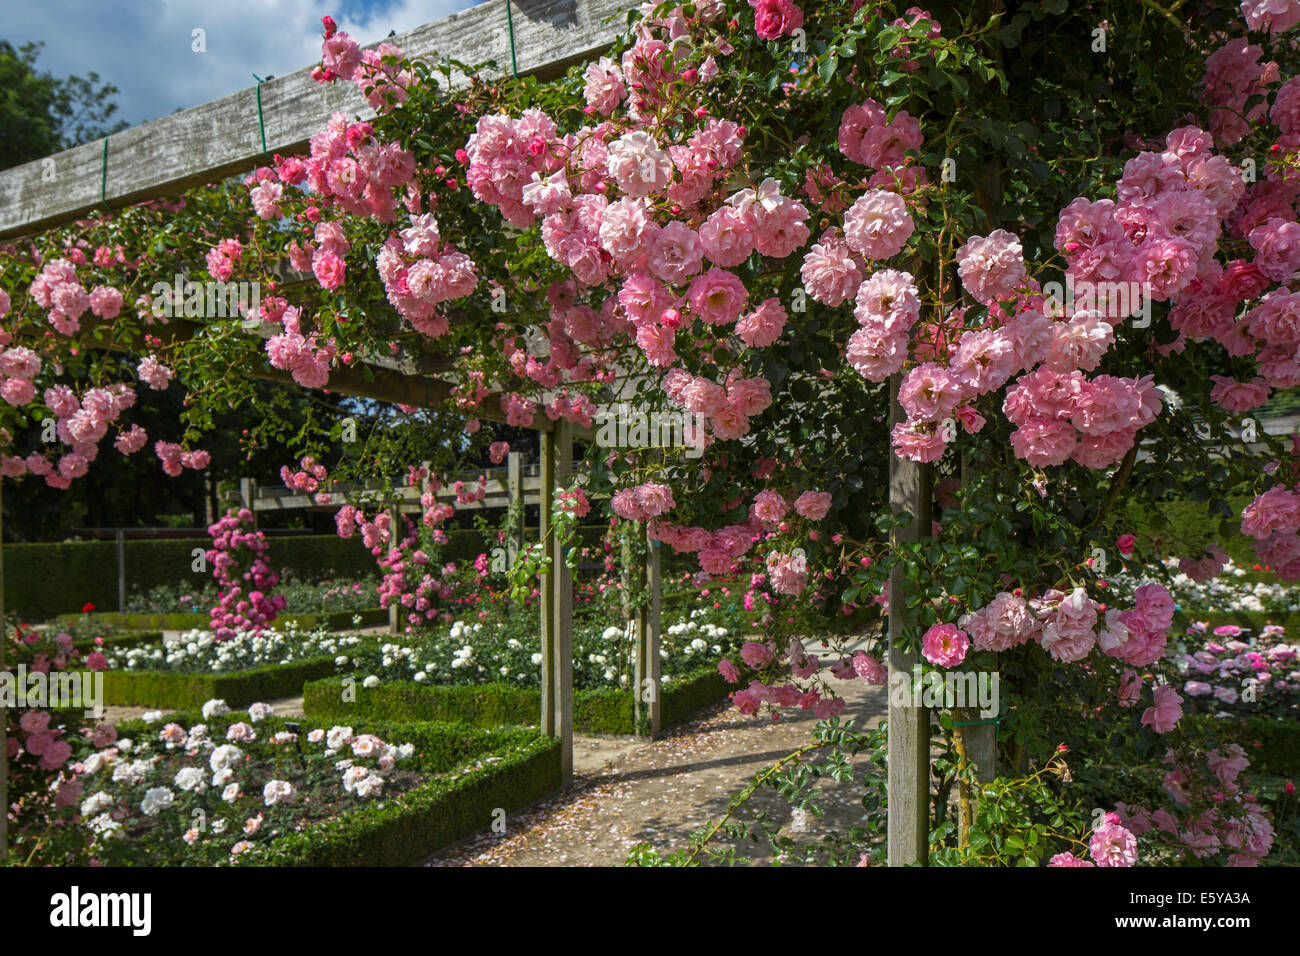 La floraison des roses rose dans la Roseraie Coloma à Sint-Pieters-Leeuw, Brabant flamand, Flandre orientale, Belgique Banque D'Images